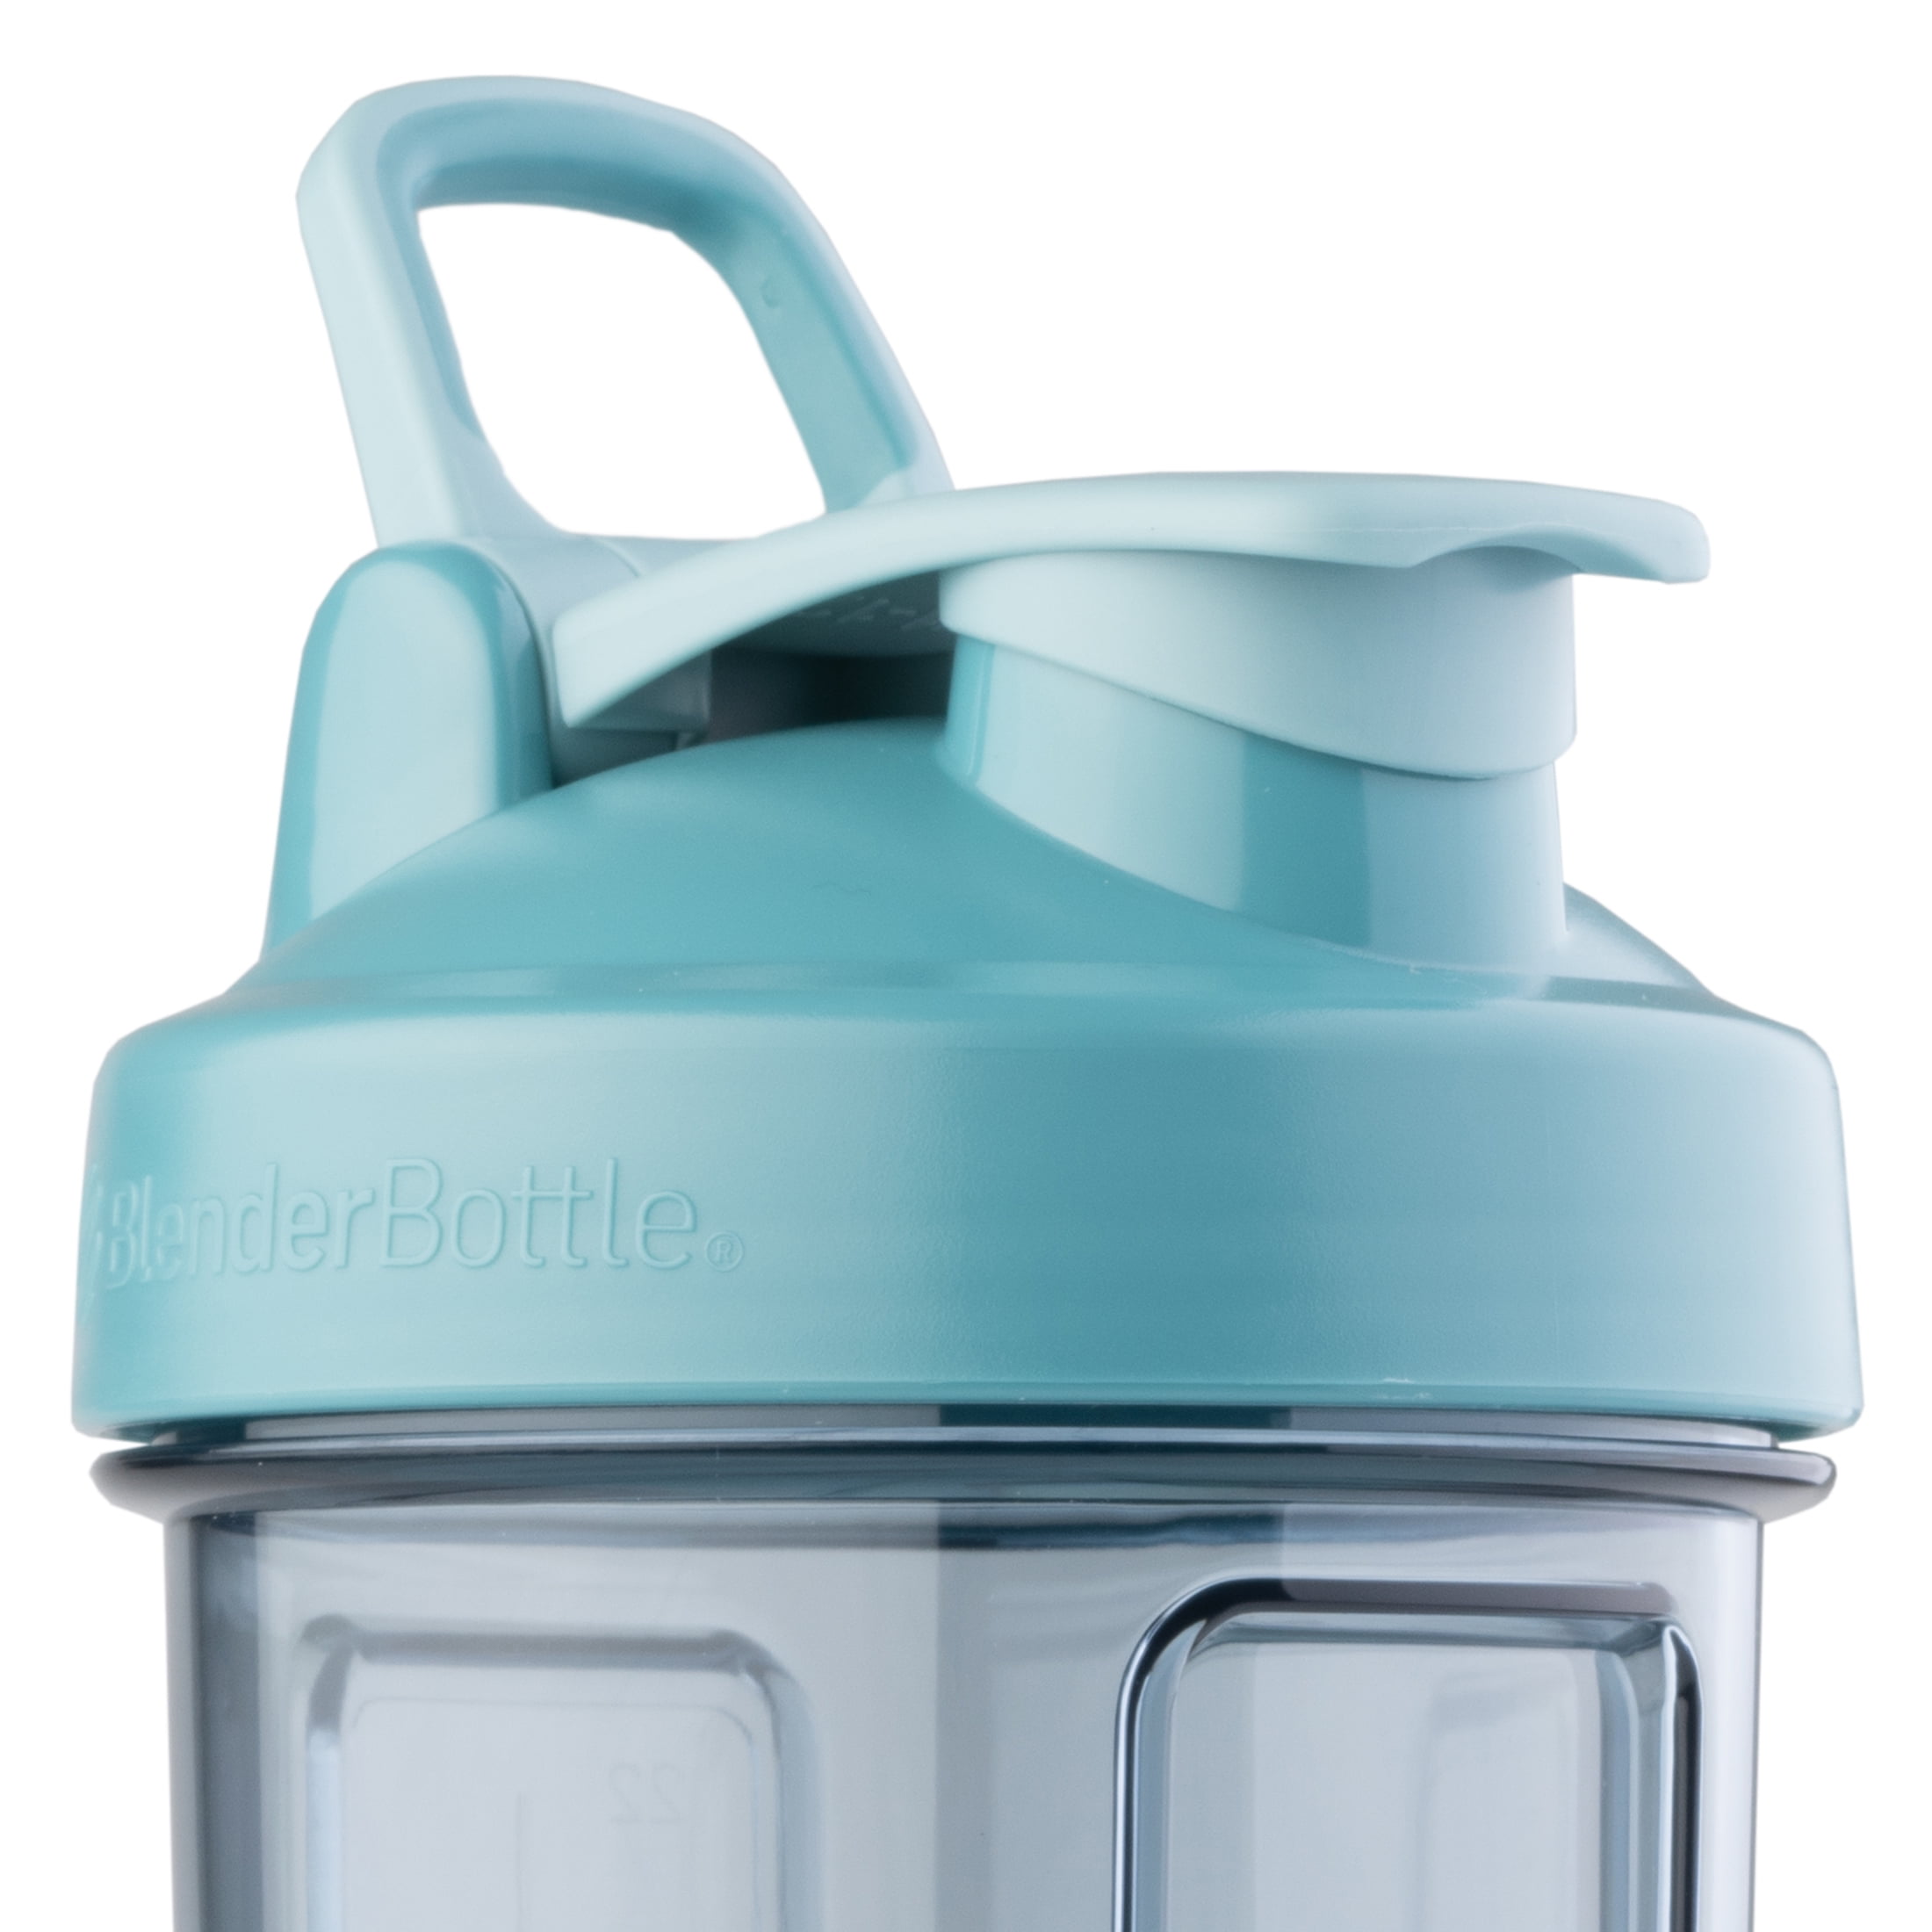 UNICO Crystal Purple Shaker Bottle - 24 oz - Extra-Durable